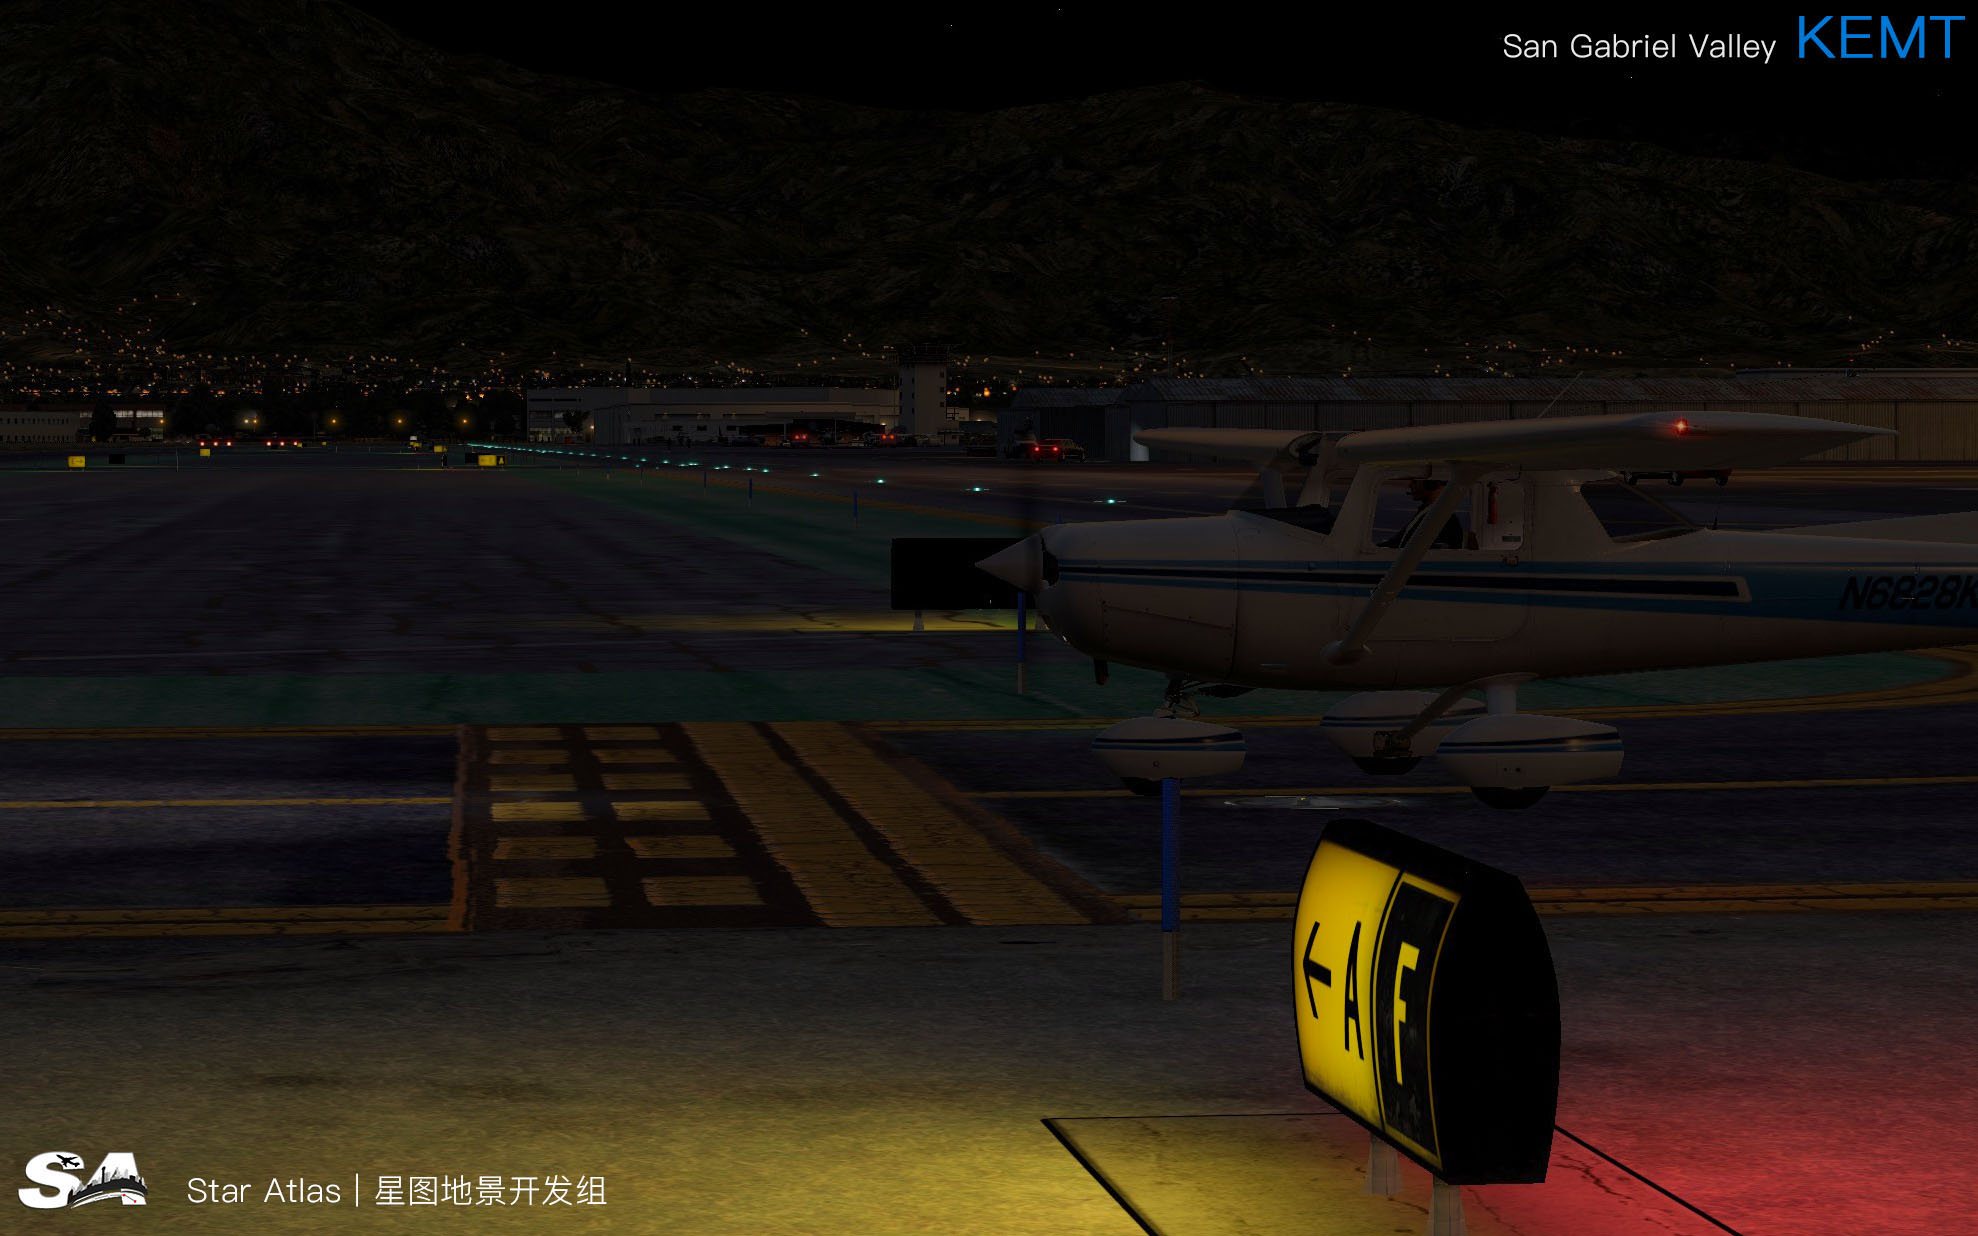 【X-Plane】KEMT-圣盖博谷机场 HD 1.0-804 